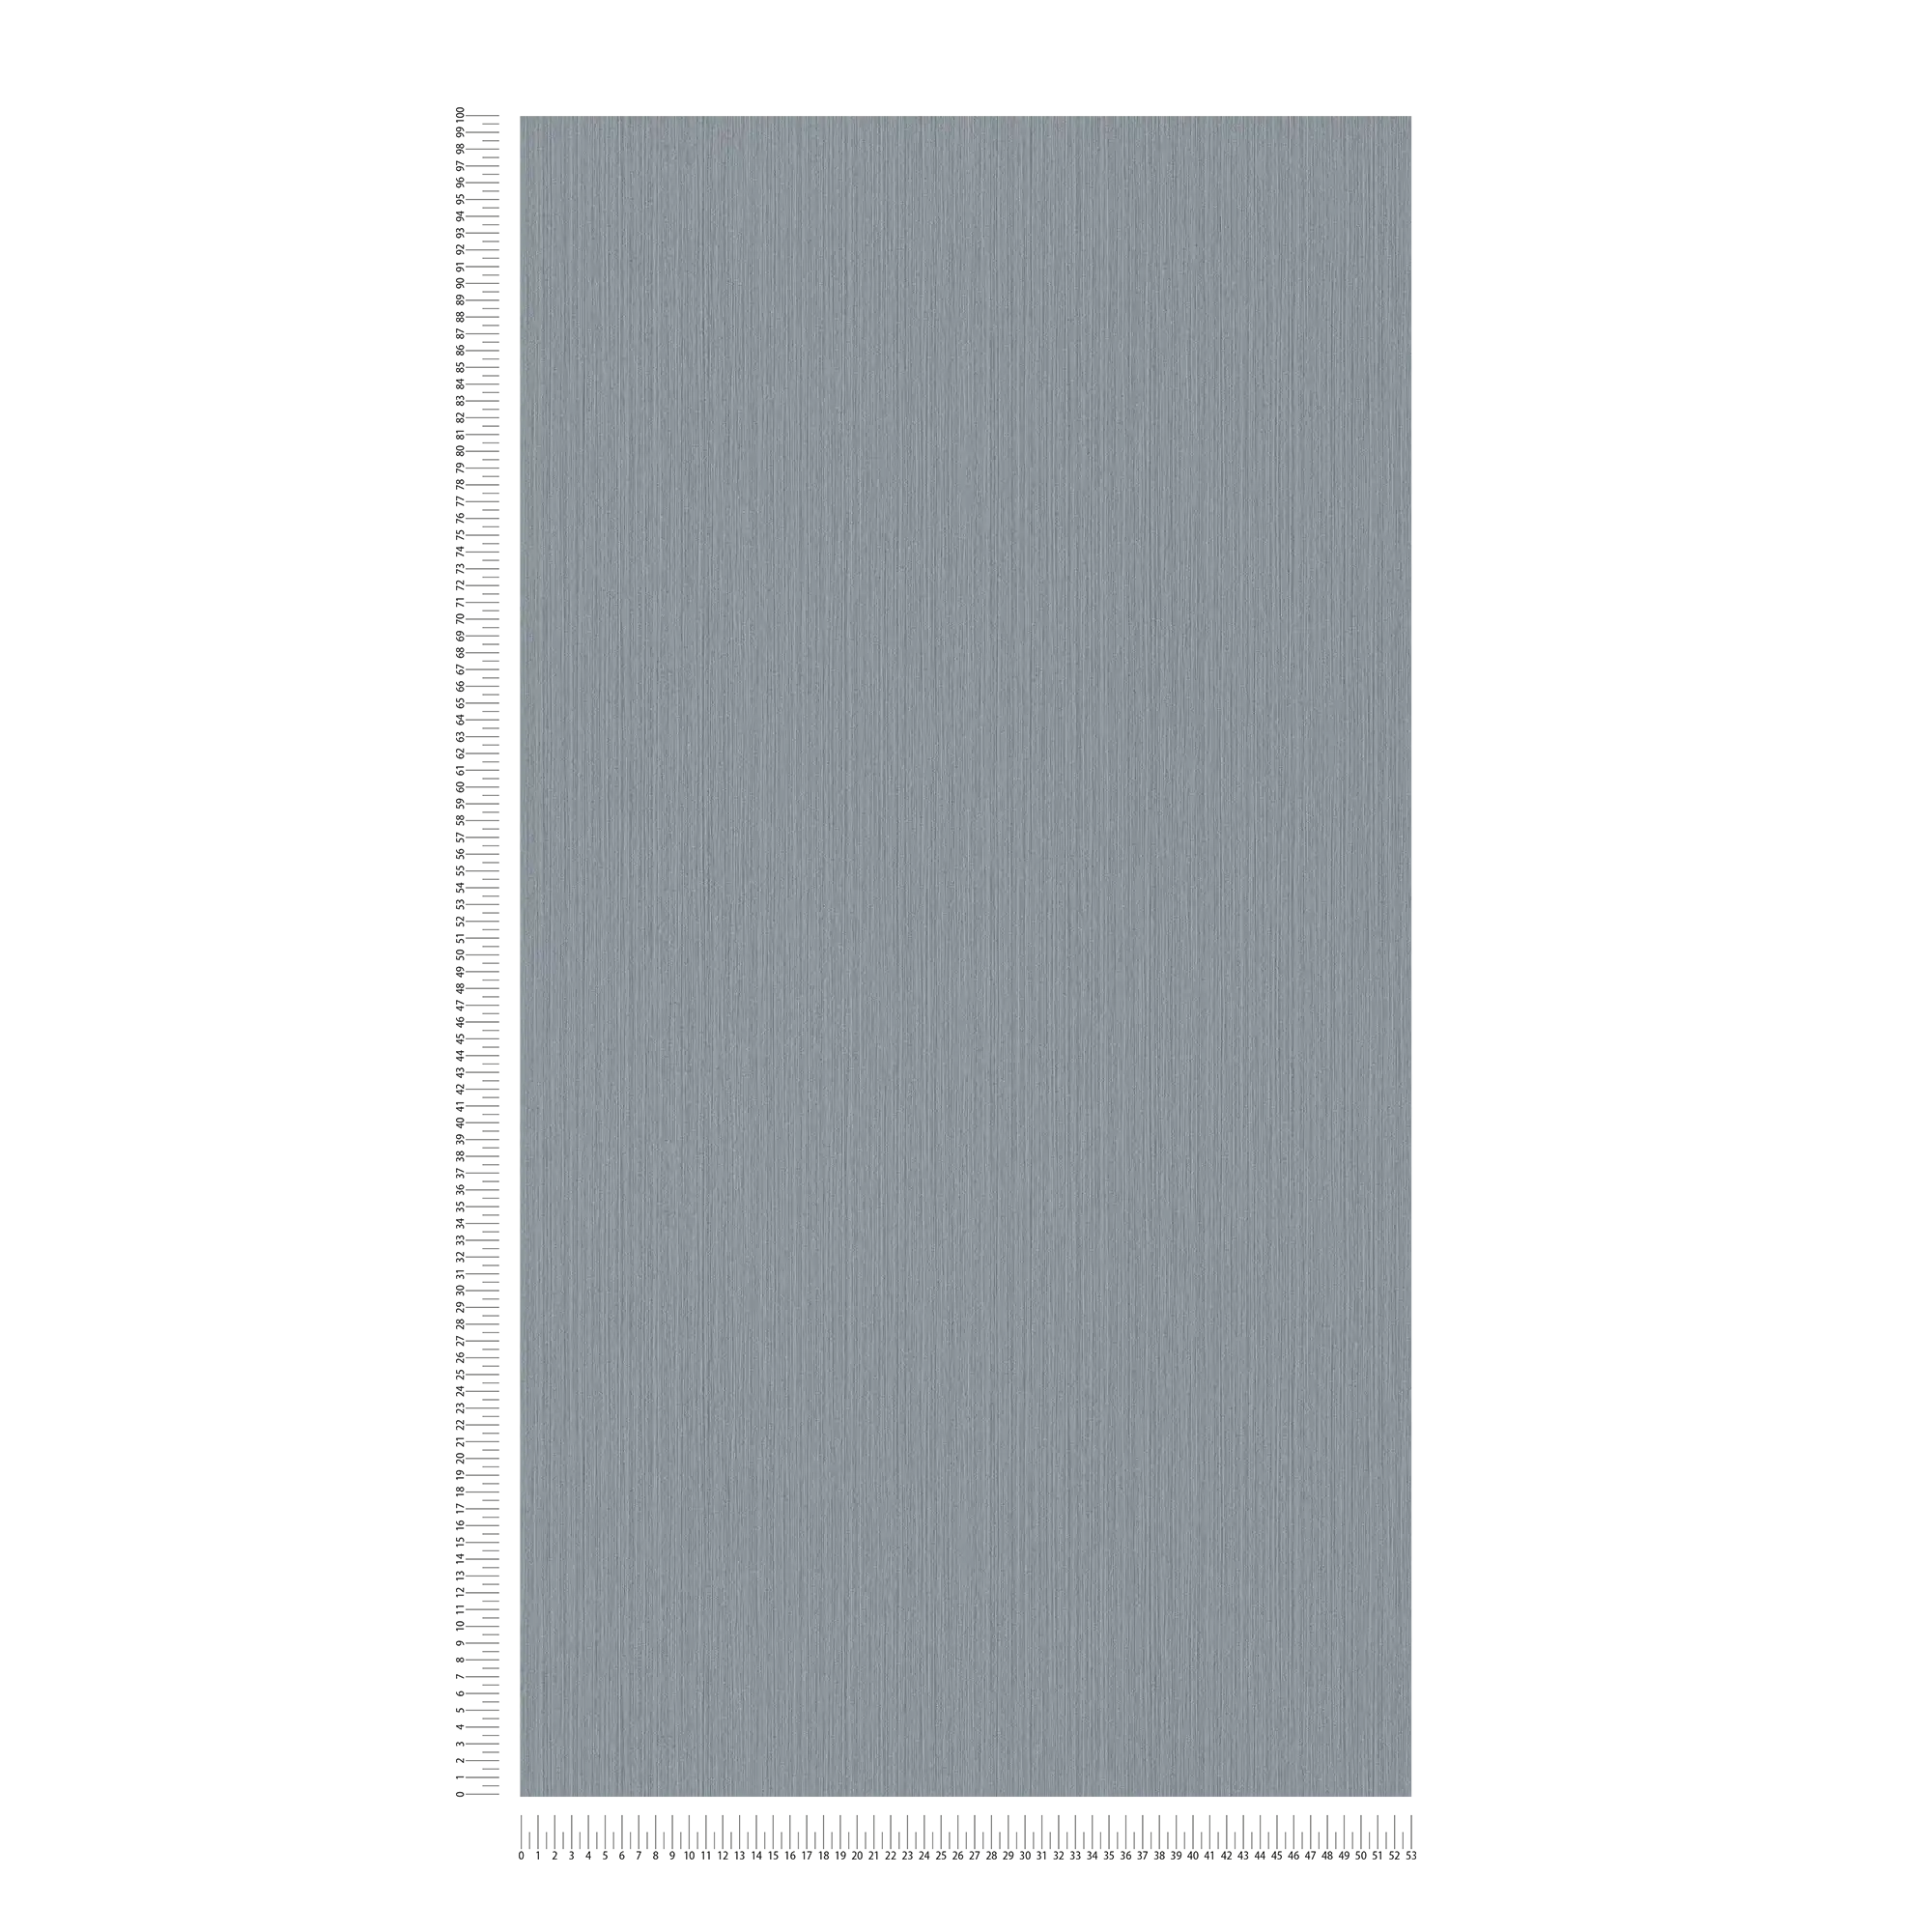             Einfarbige Tapete Grau mit meliertem Textileffekt von MICHALSKY
        